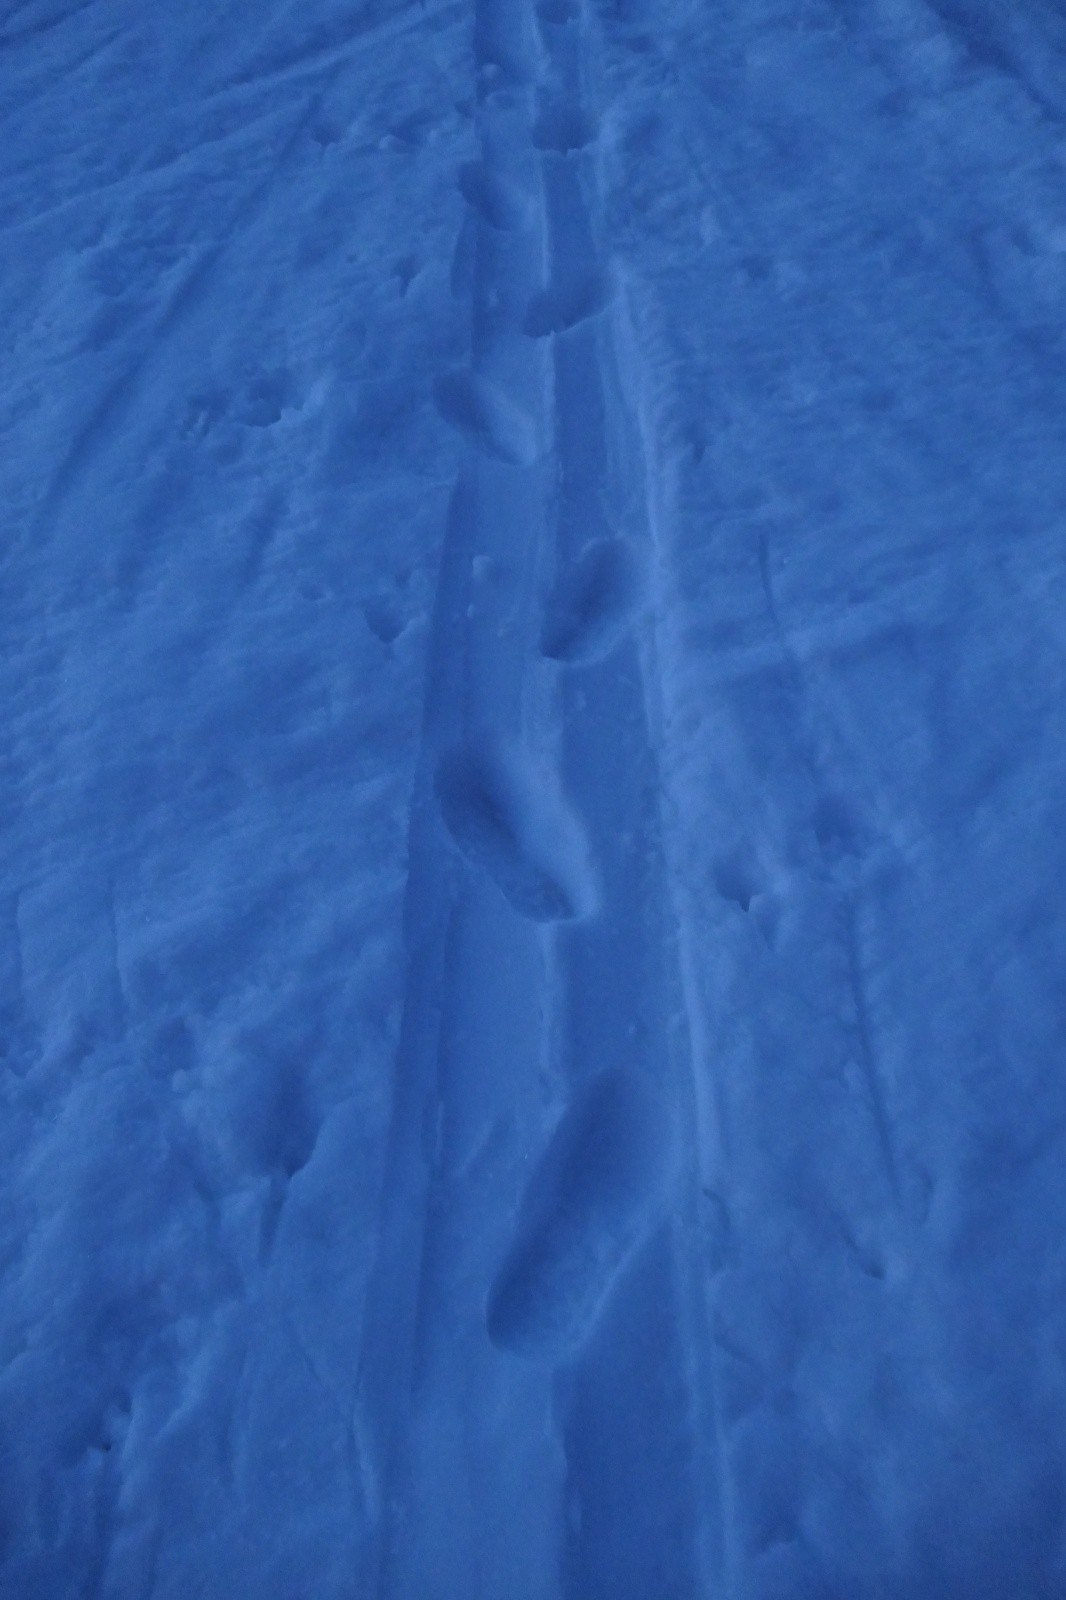 Dahu, ski devant, chaussure à l'arrière